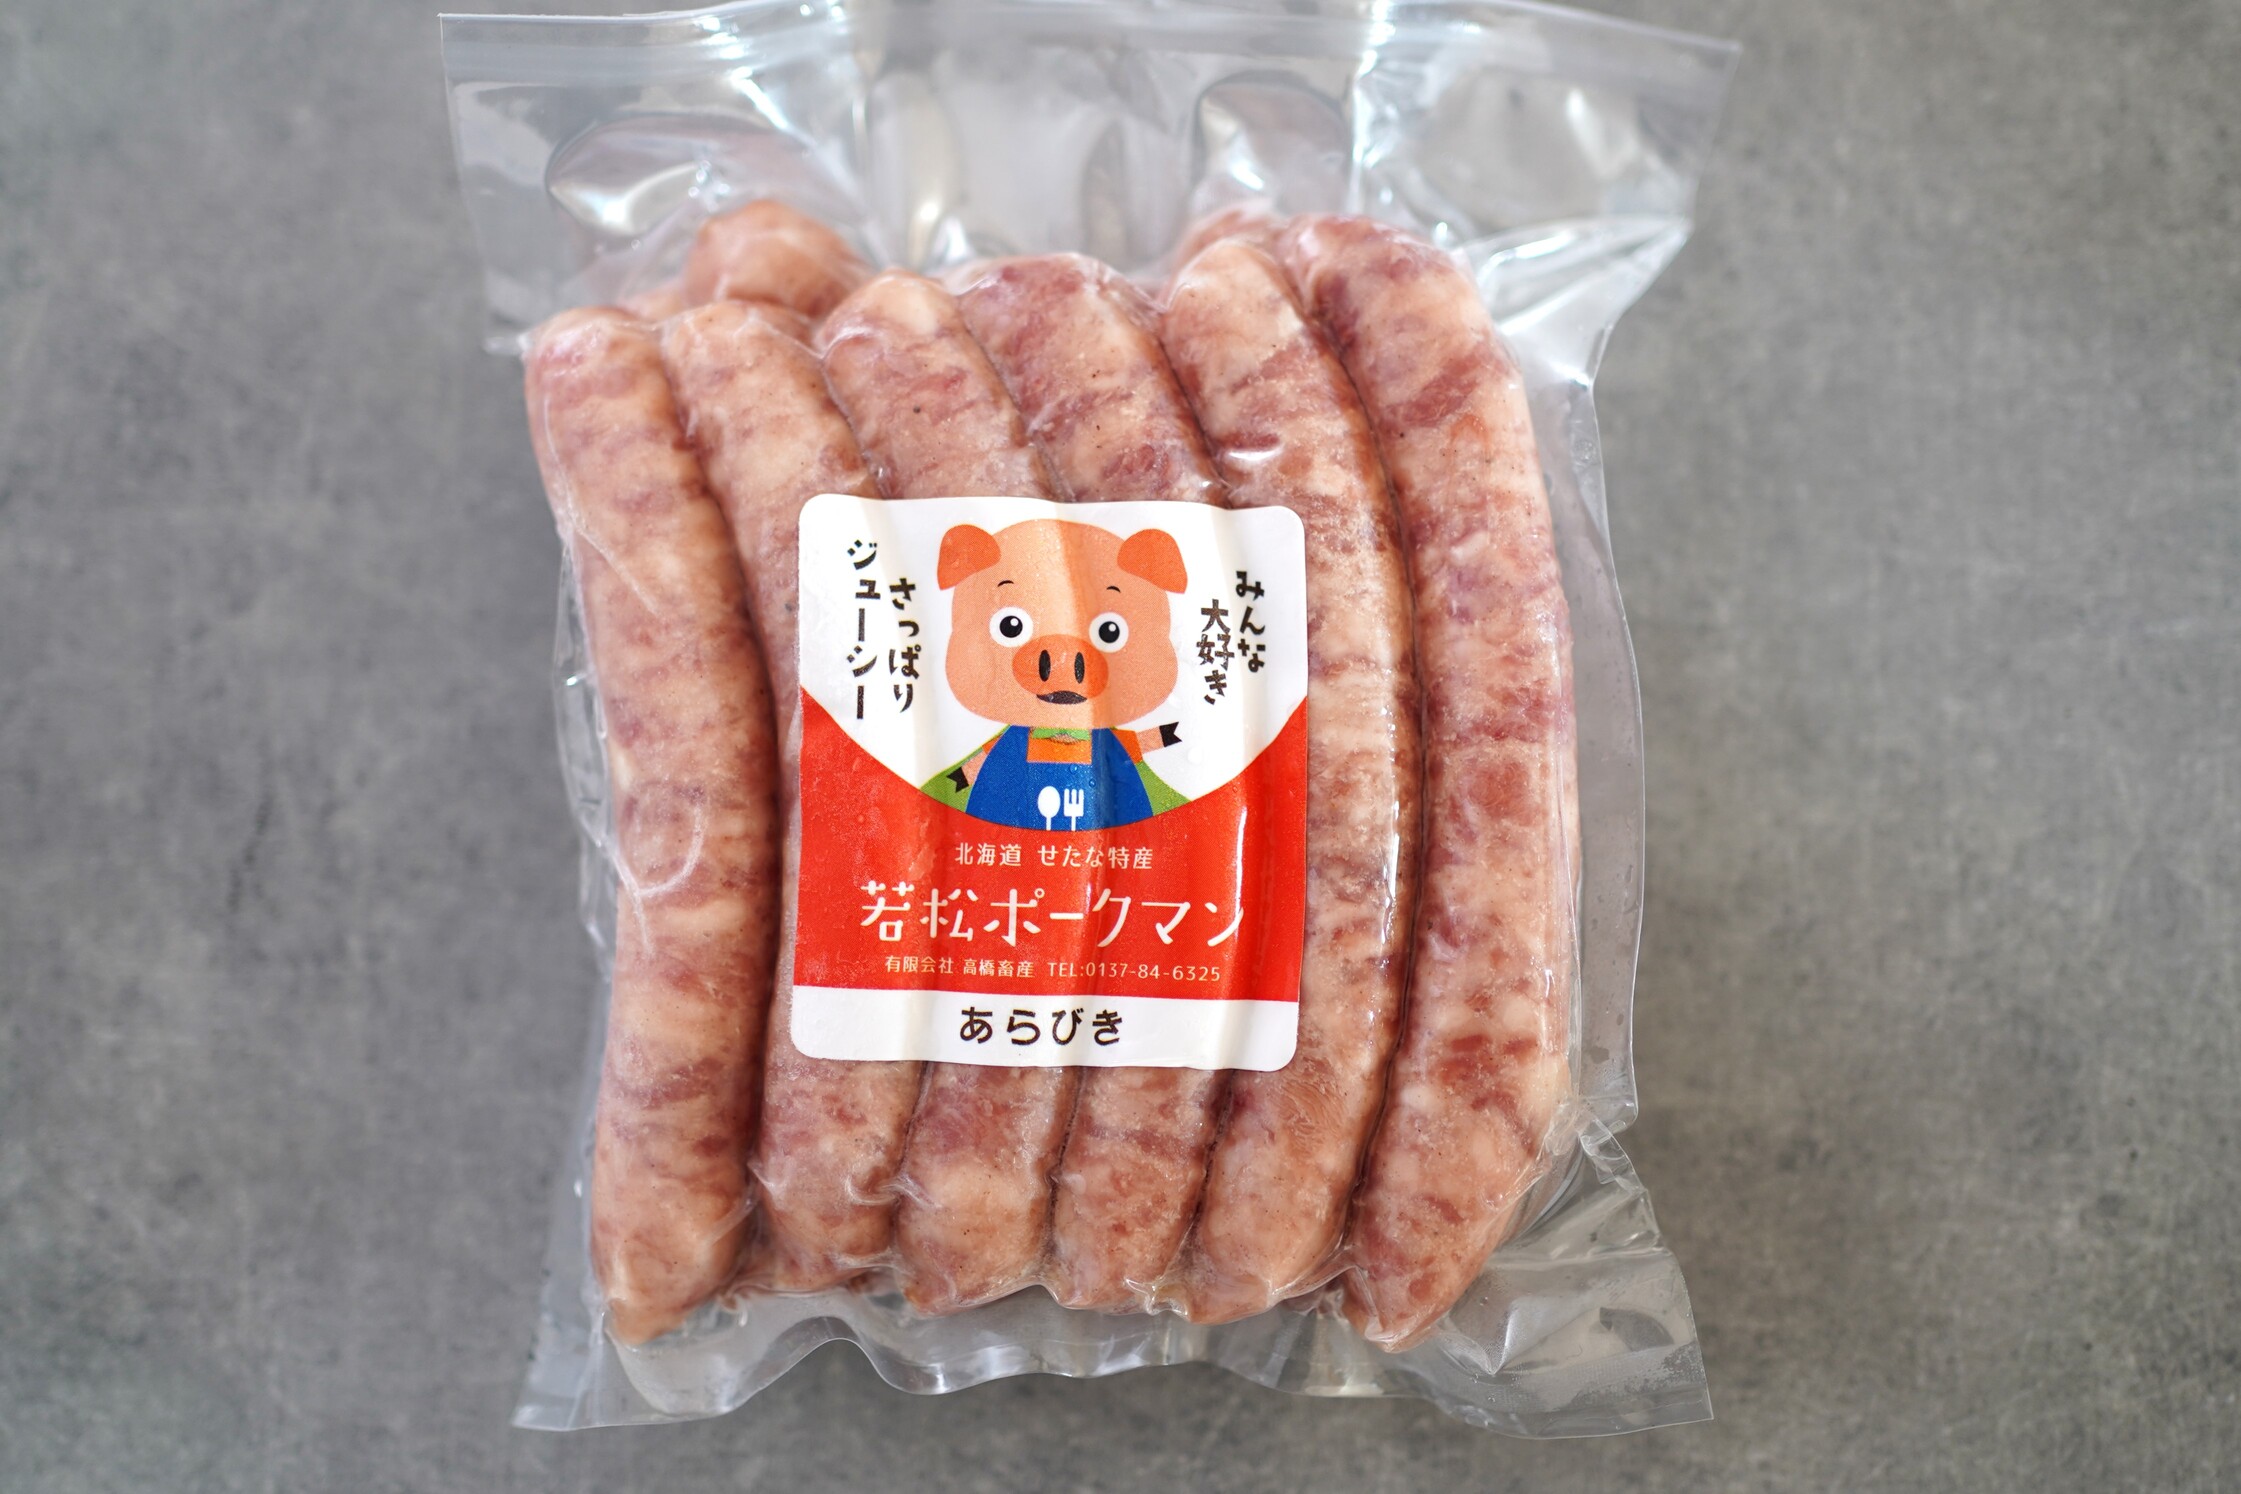 北海道産ブランドSPF豚「若松ポークマン」のわくわく加工品セット